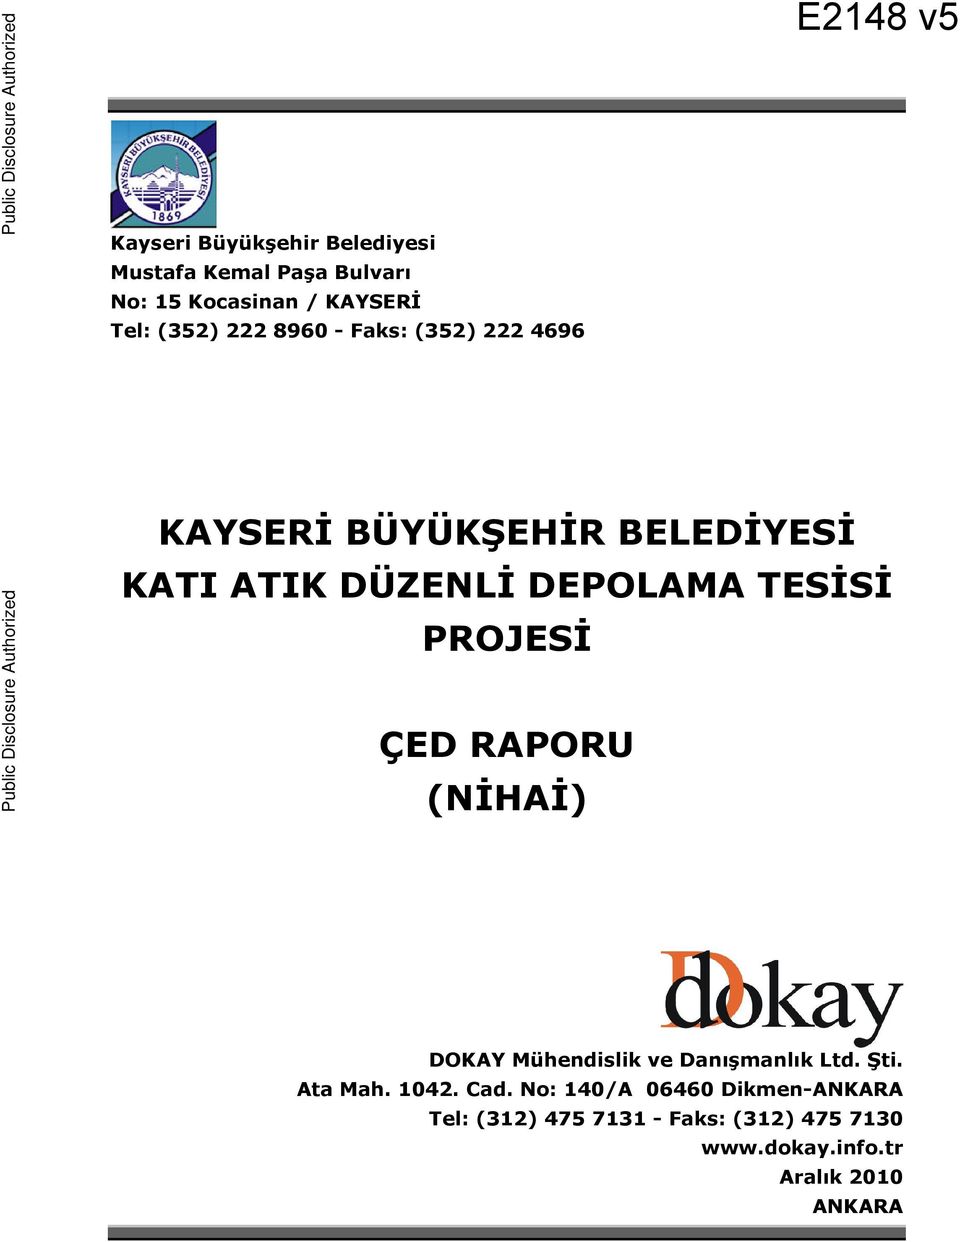 ATIK DÜZENLĐ DEPOLAMA TESĐSĐ PROJESĐ ÇED RAPORU (NĐHAĐ) Public Disclosure Authorized DOKAY Mühendislik ve Danışmanlık Ltd. Şti.